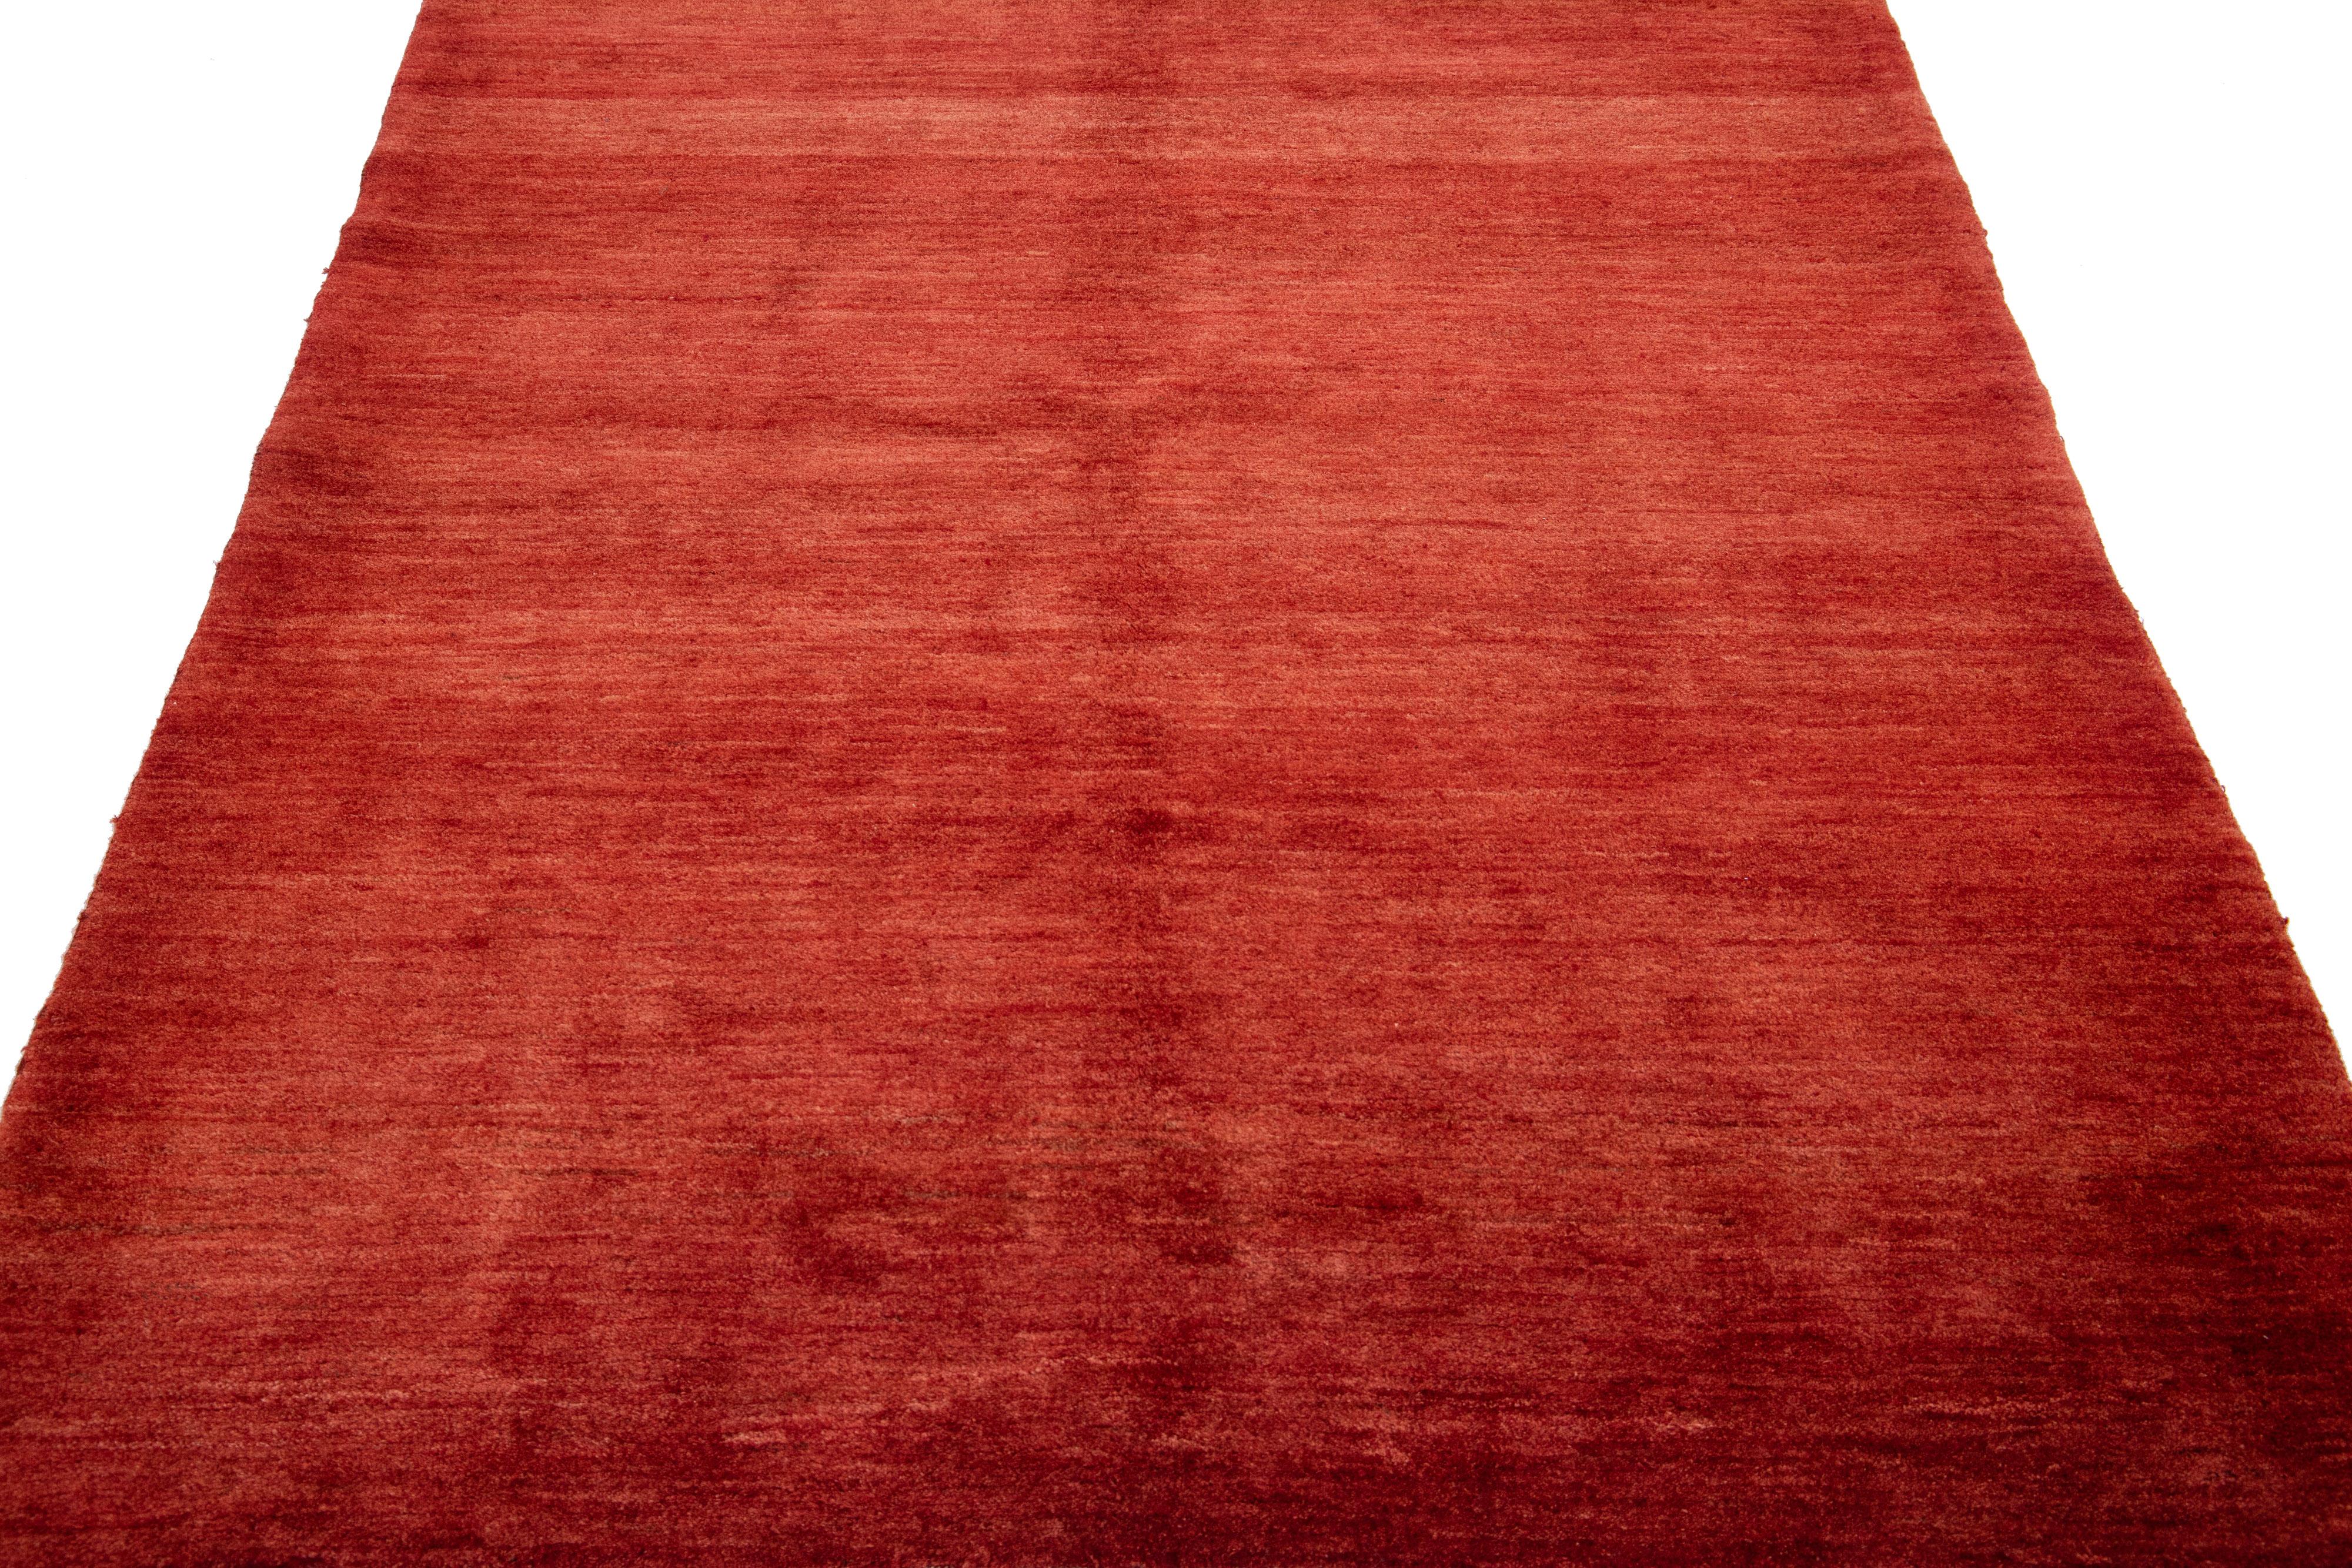 Magnifique tapis moderne en laine nouée à la main de style Gabbeh, avec un champ de couleur rouge-rouille. Cette pièce présente un magnifique motif solide sur toute sa surface.

Ce tapis mesure : 5'2